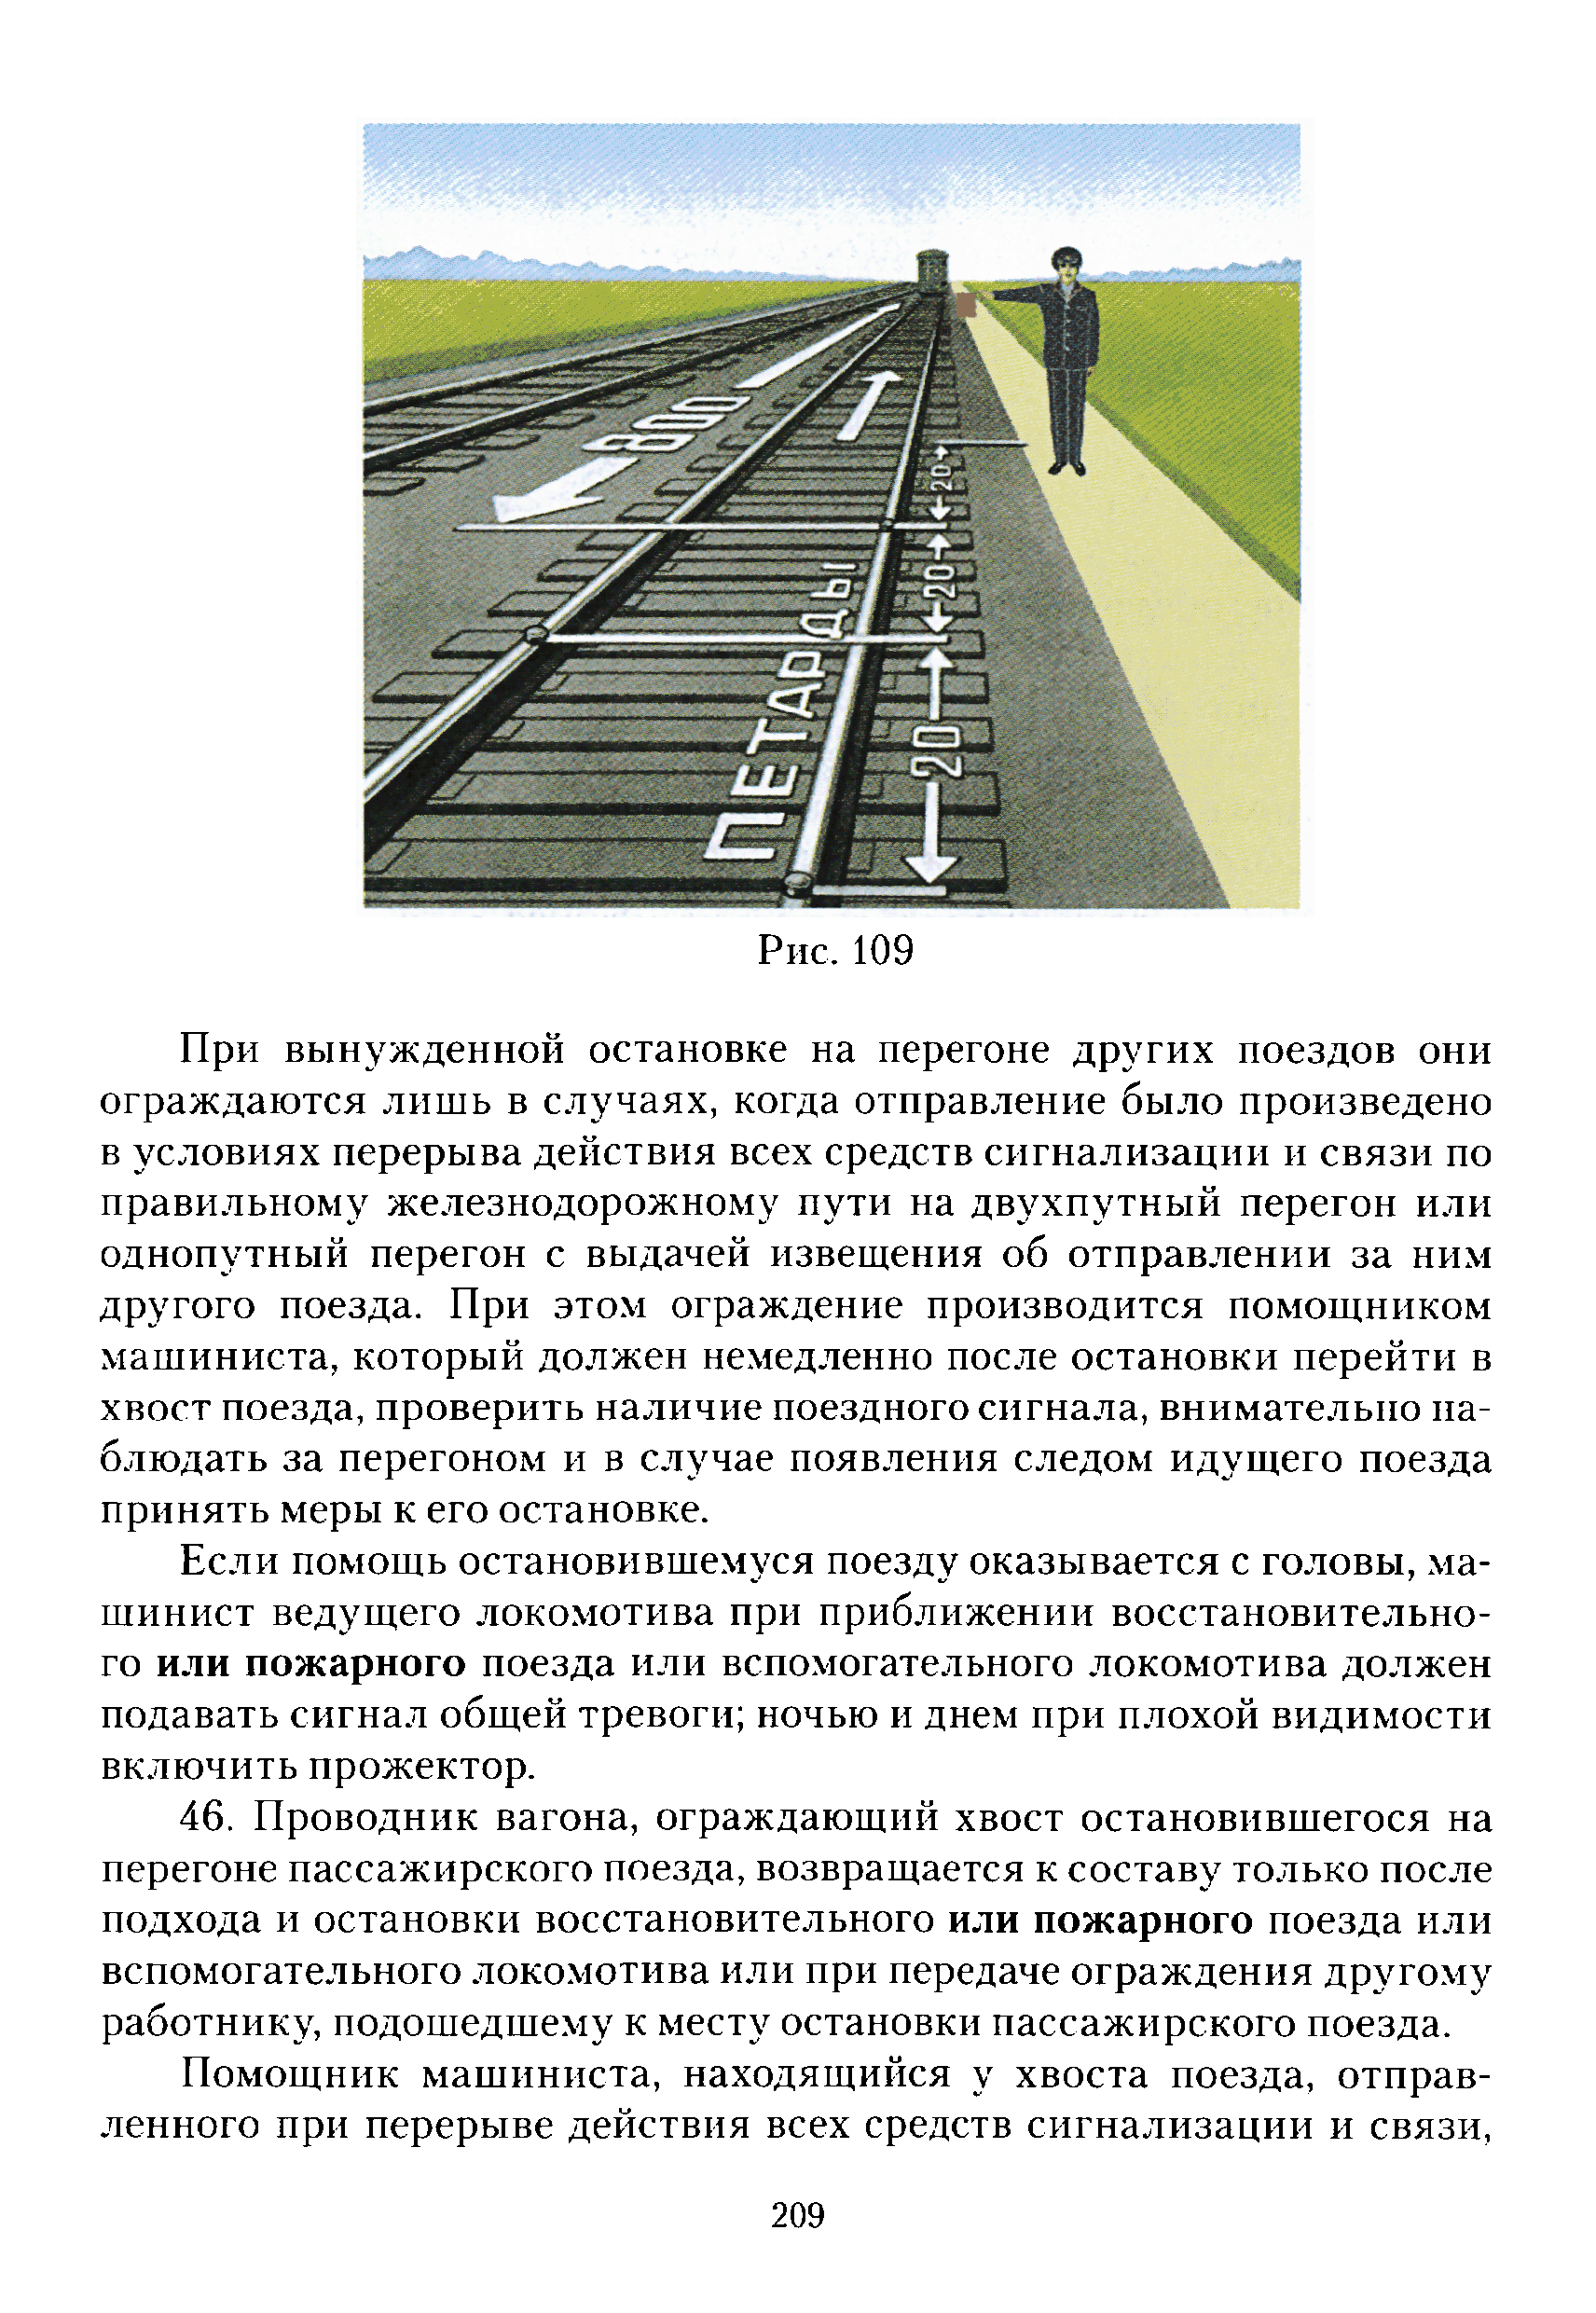 Инструкция по сигнализации на промышленном железнодорожном